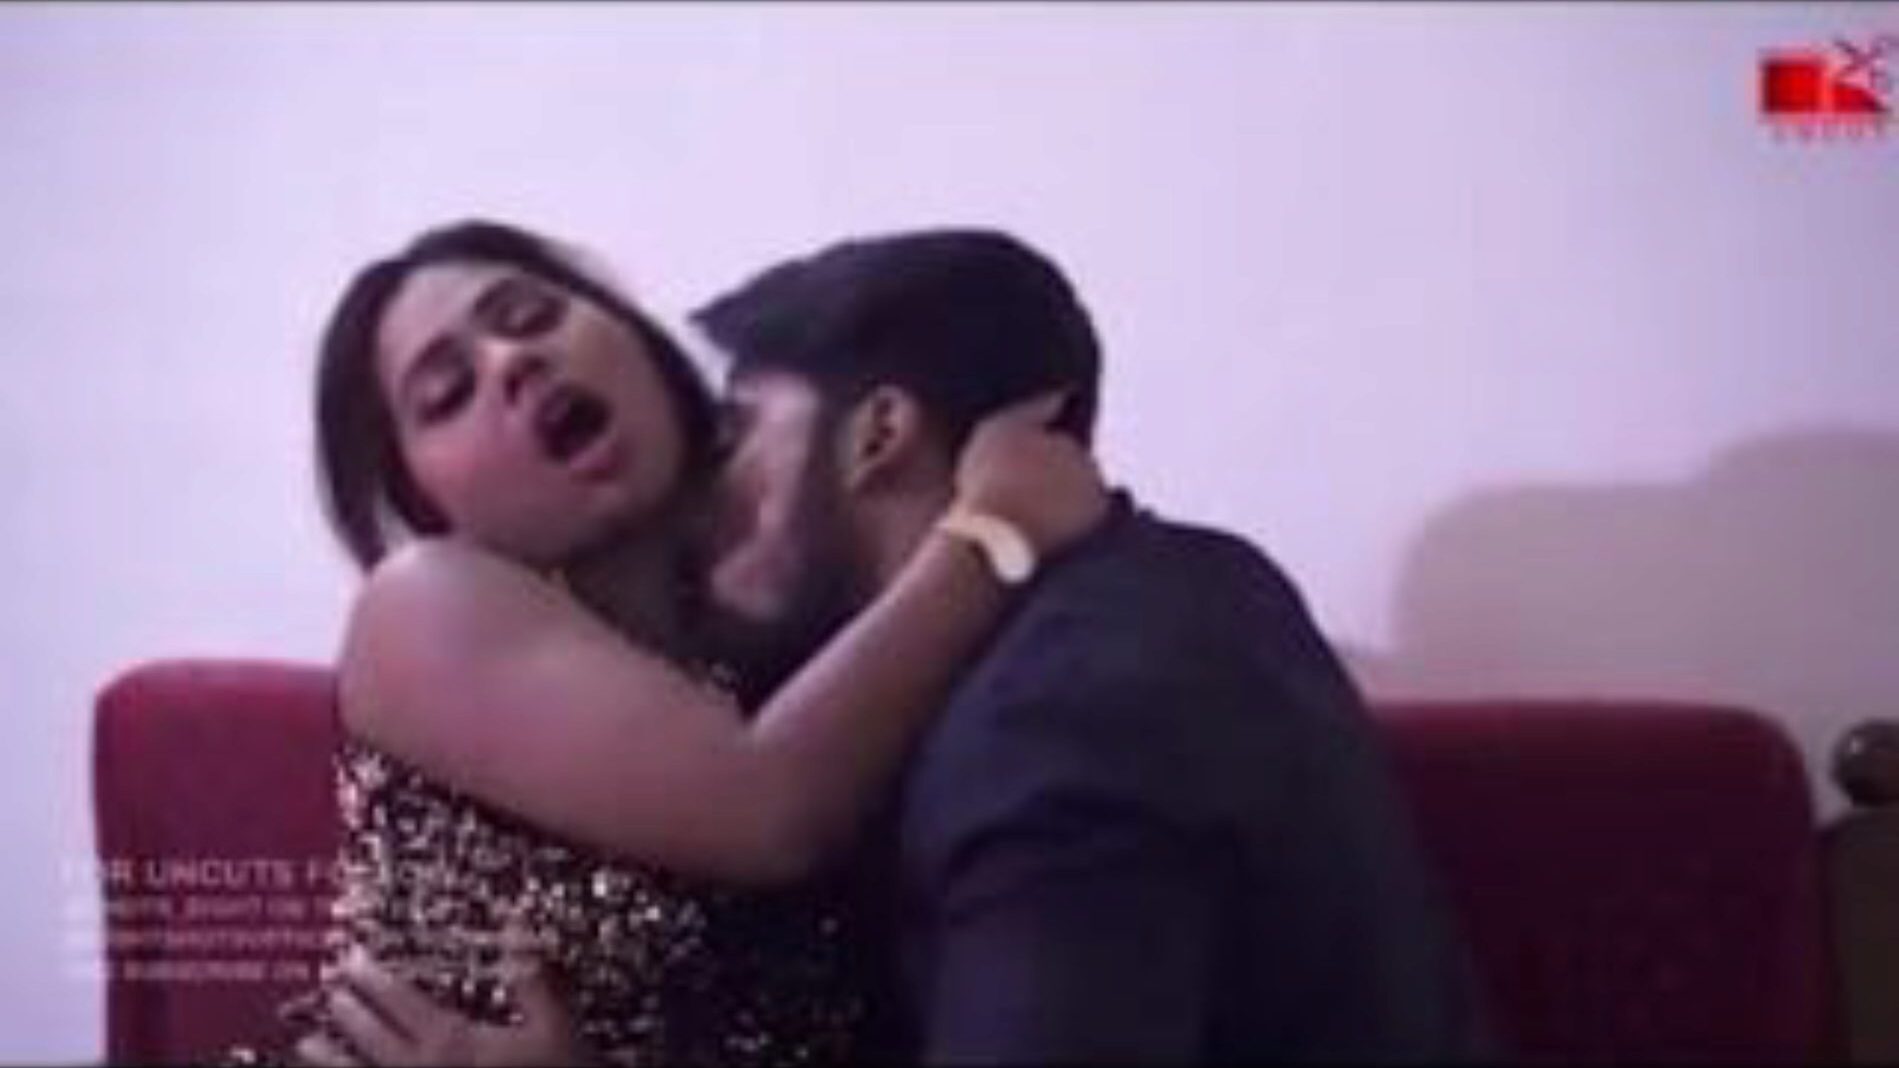 femme indienne baisée devant son mari hindi chudai ... regarder femme indienne baisée devant son mari film hindi chudai sur xhamster - la foule ultime de vidéos pornographiques gratuites asiatiques indiennes xxx gratuites